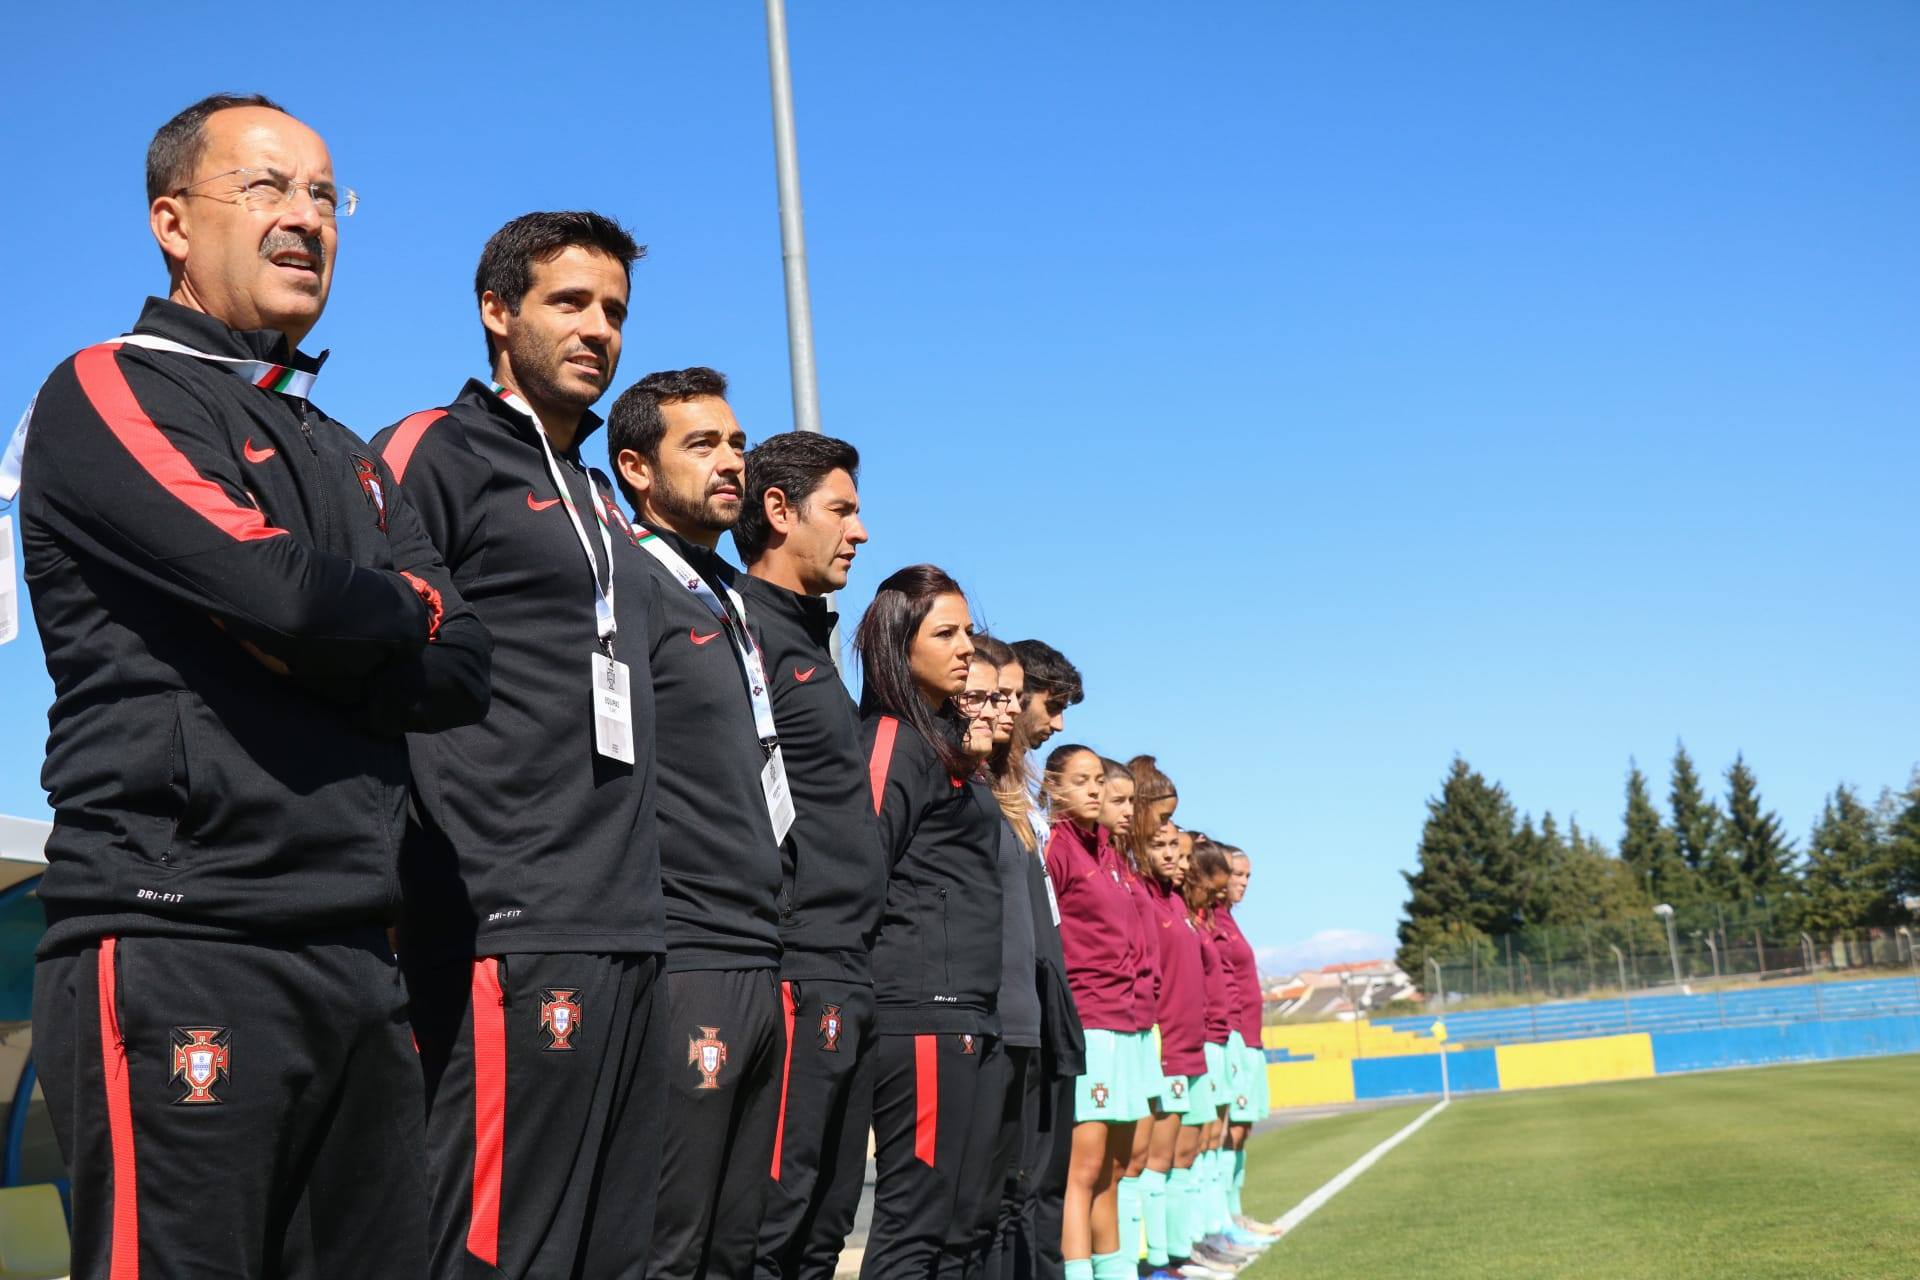 Cursos de Treinador Futebol: Associação de Futebol de Bragança bate recorde de inscrições